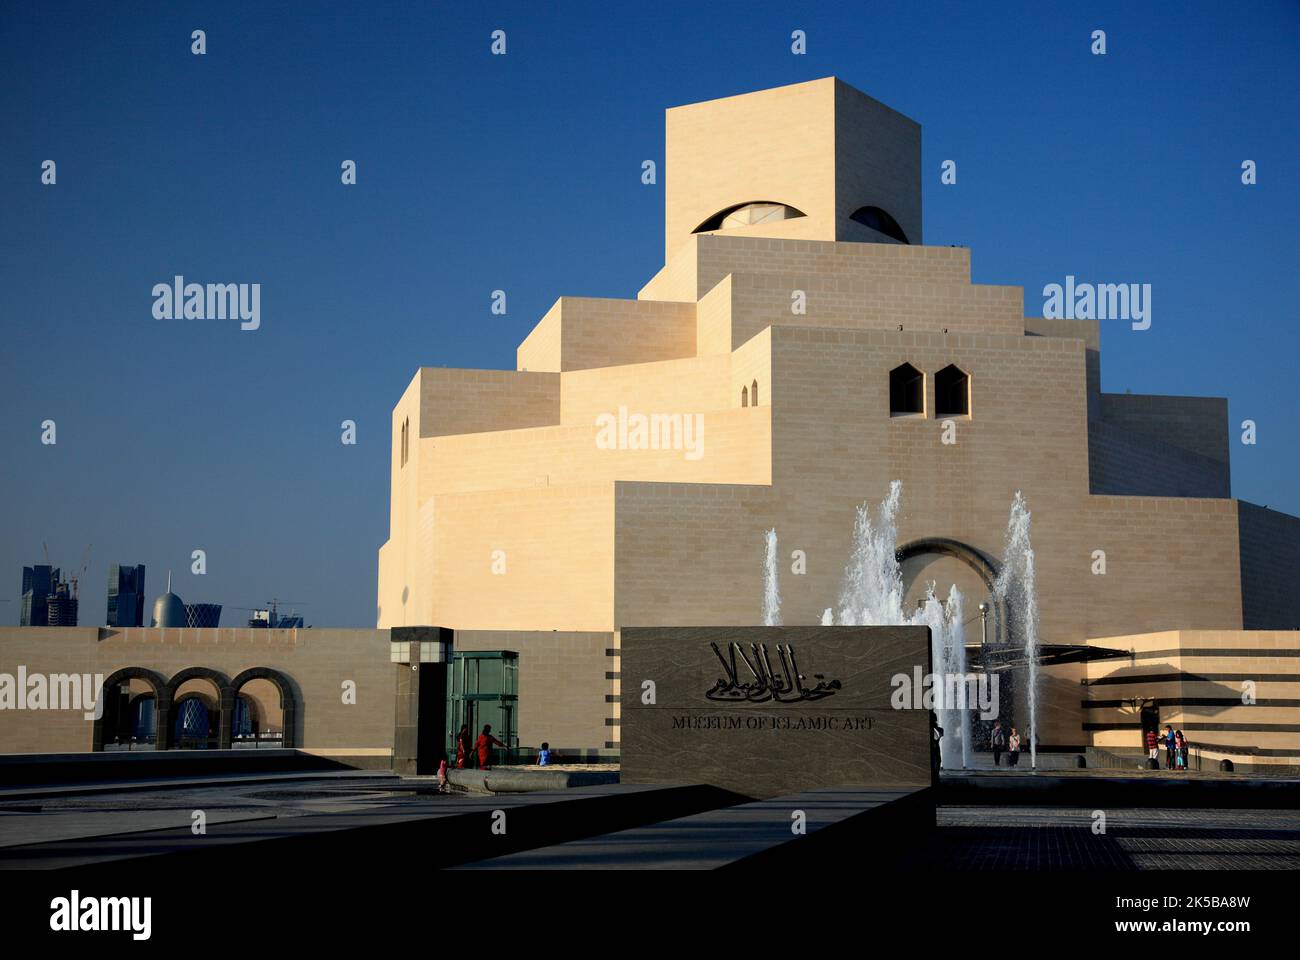 Museum für islamische Kunst, Gilt als bedeutstes Museum für islamische Kunst à Arabien, Wahrzeichen der Stadt Doha, Qatar, Katar Banque D'Images